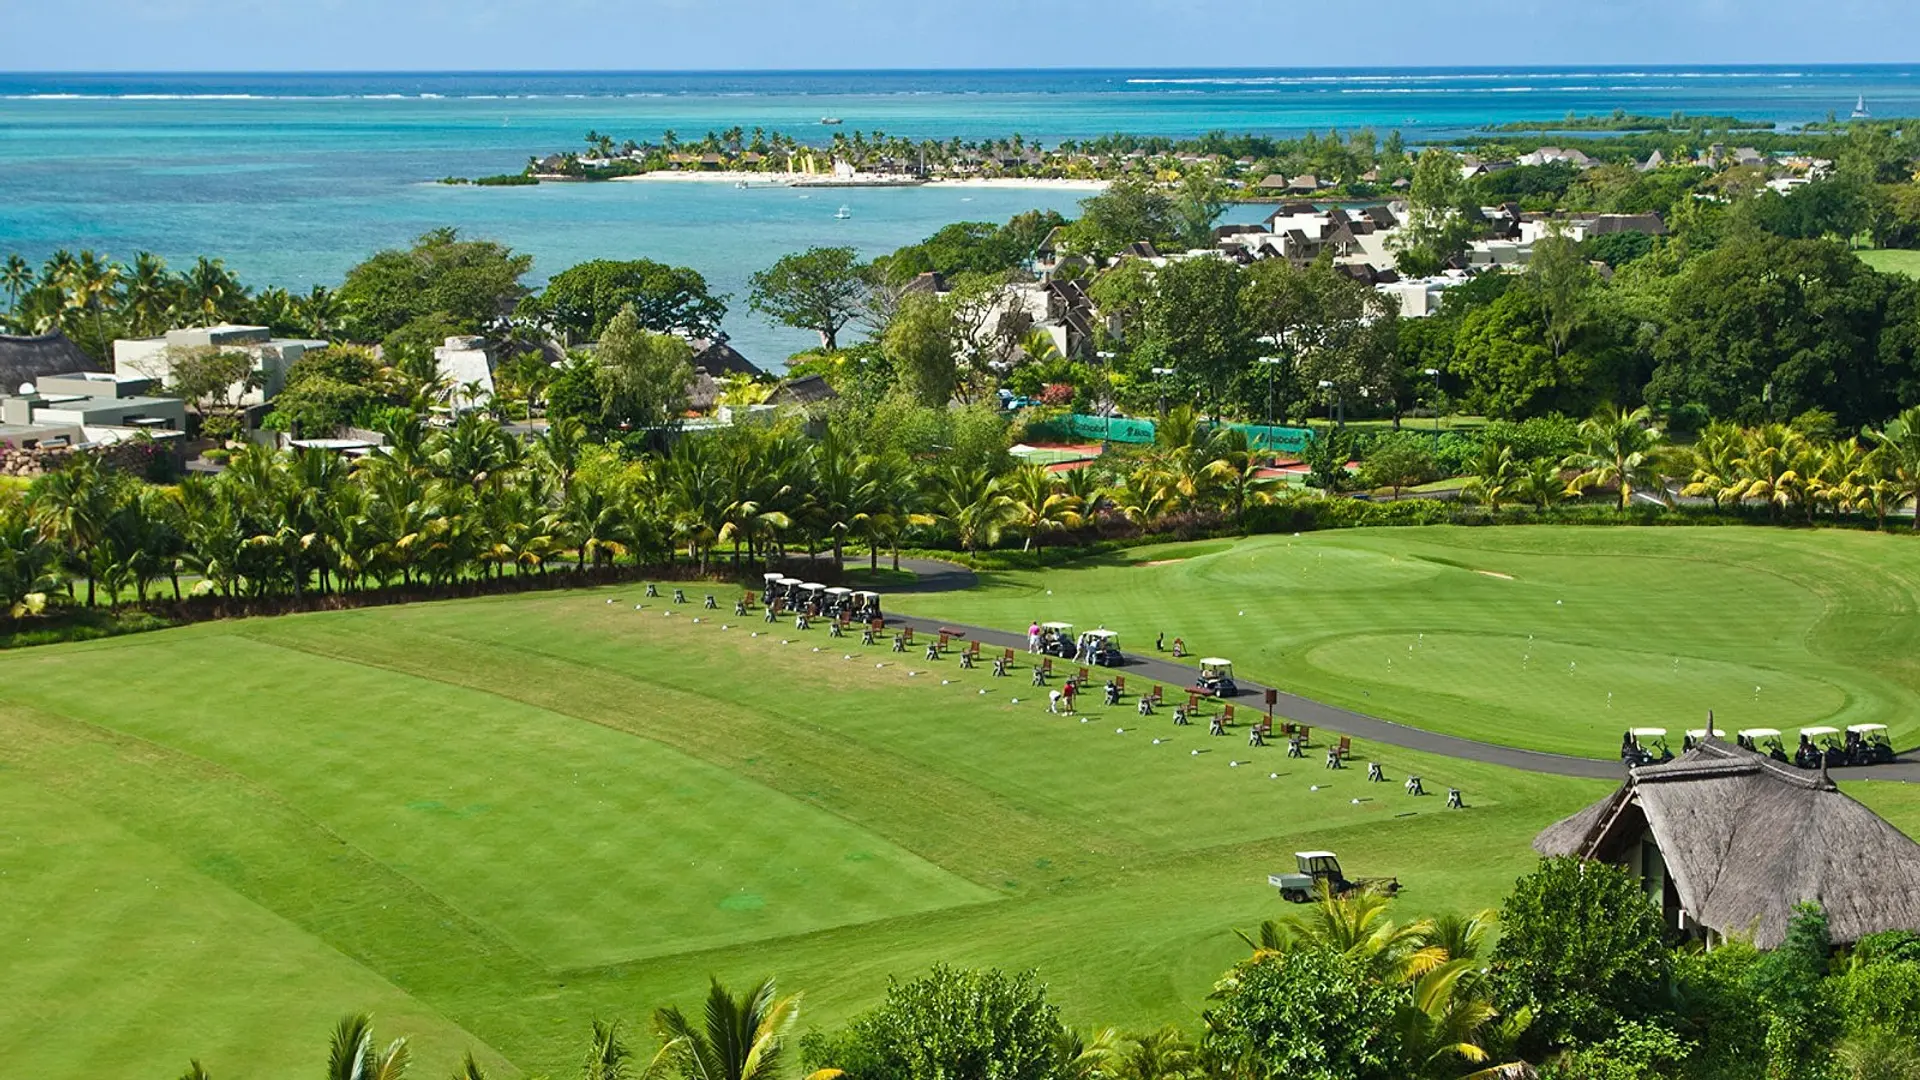 Hotel review Service & Facilities' - Four Seasons Resort Mauritius at Anahita - 1